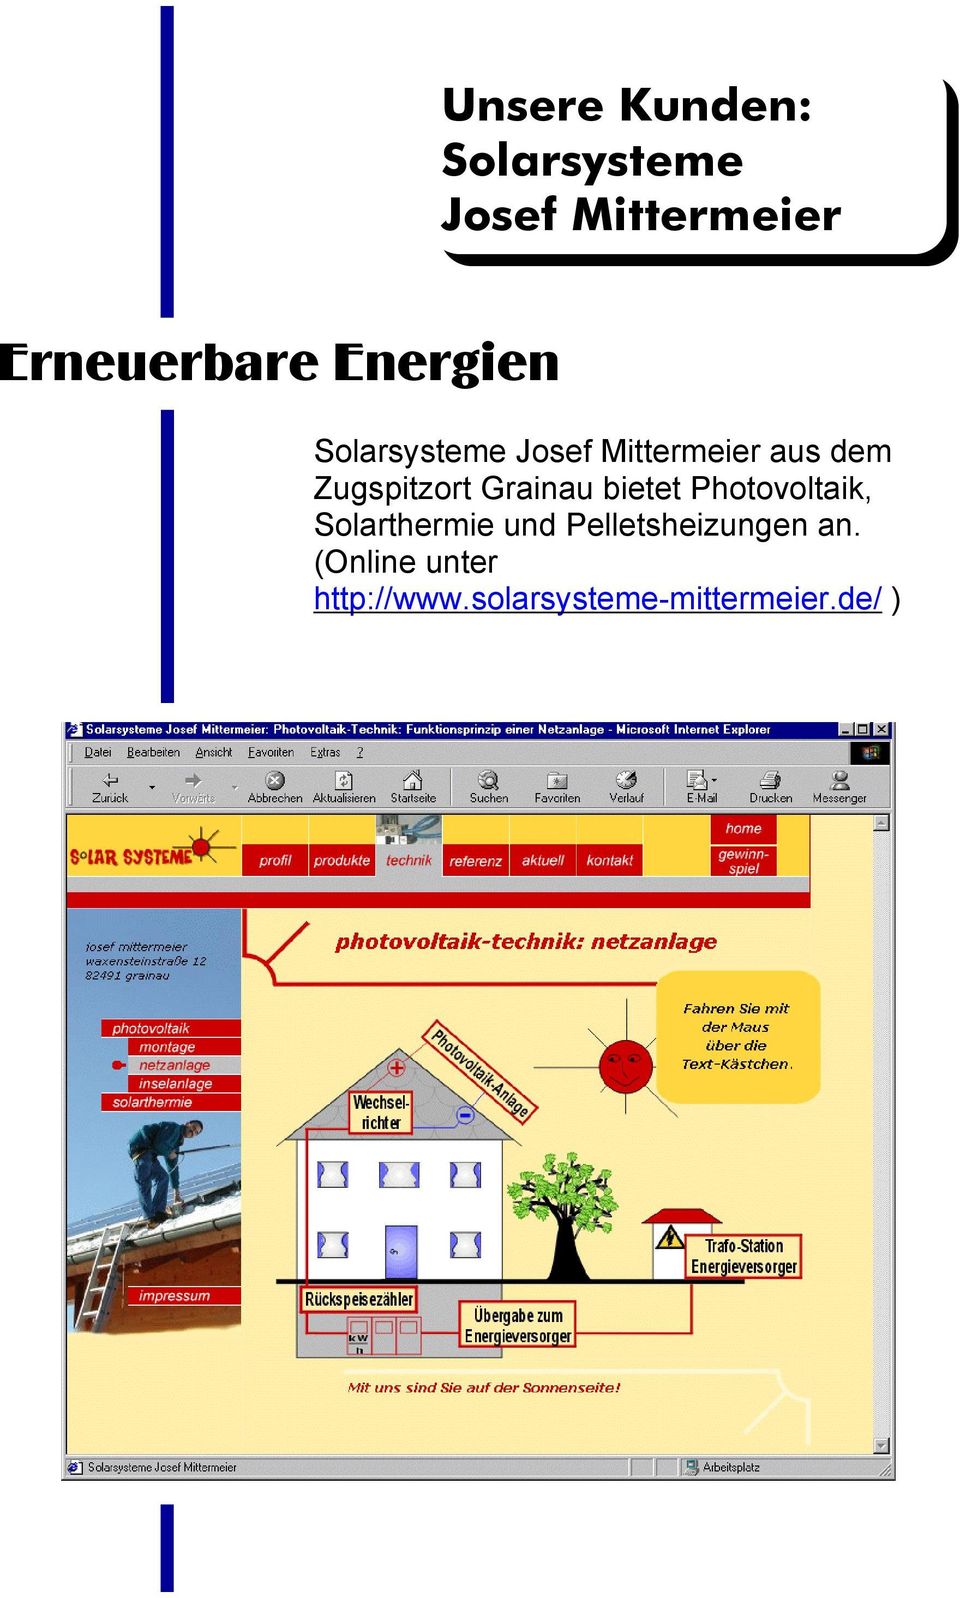 Grainau bietet Photovoltaik, Solarthermie und